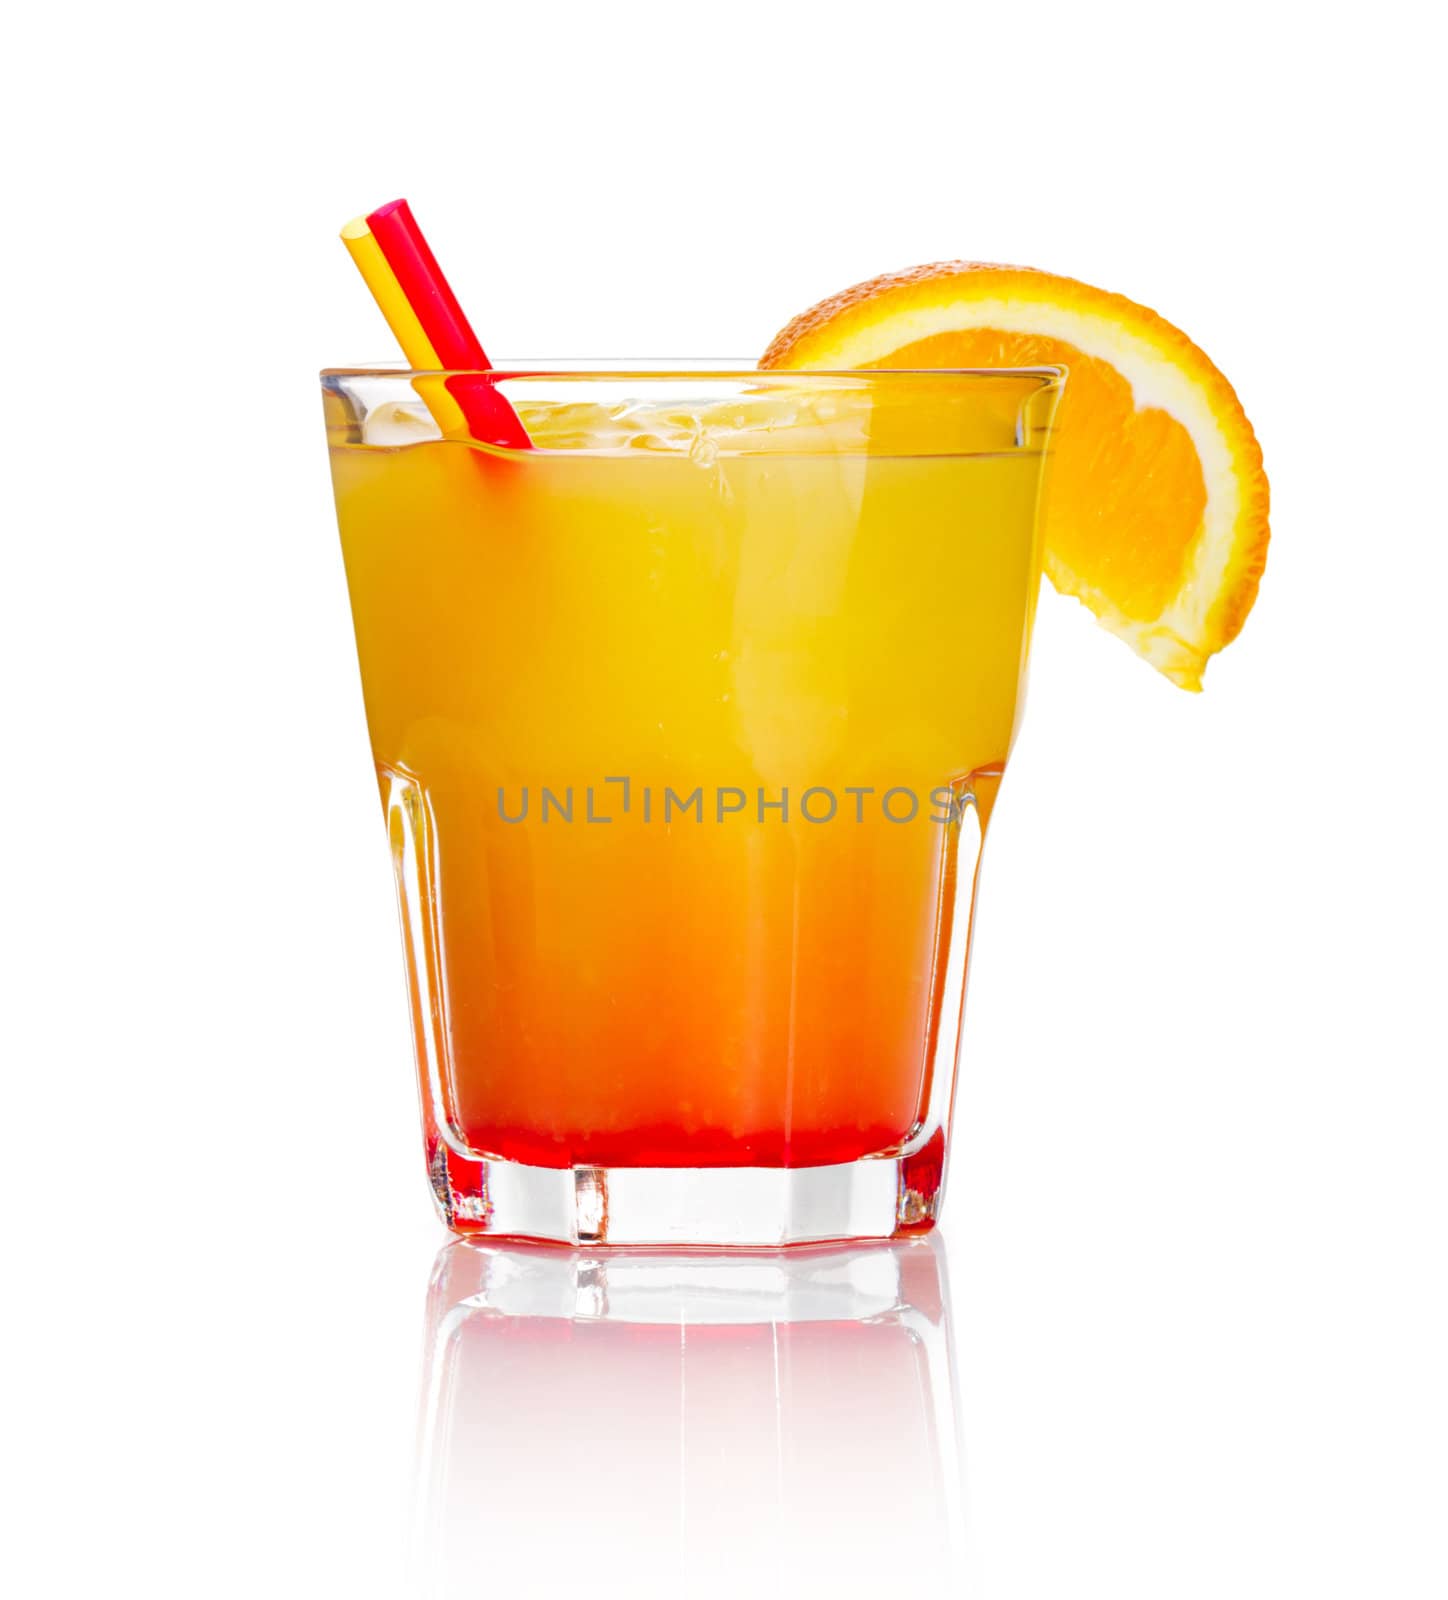 Orange alcohol cocktail with orange fruit slice isolated on white background